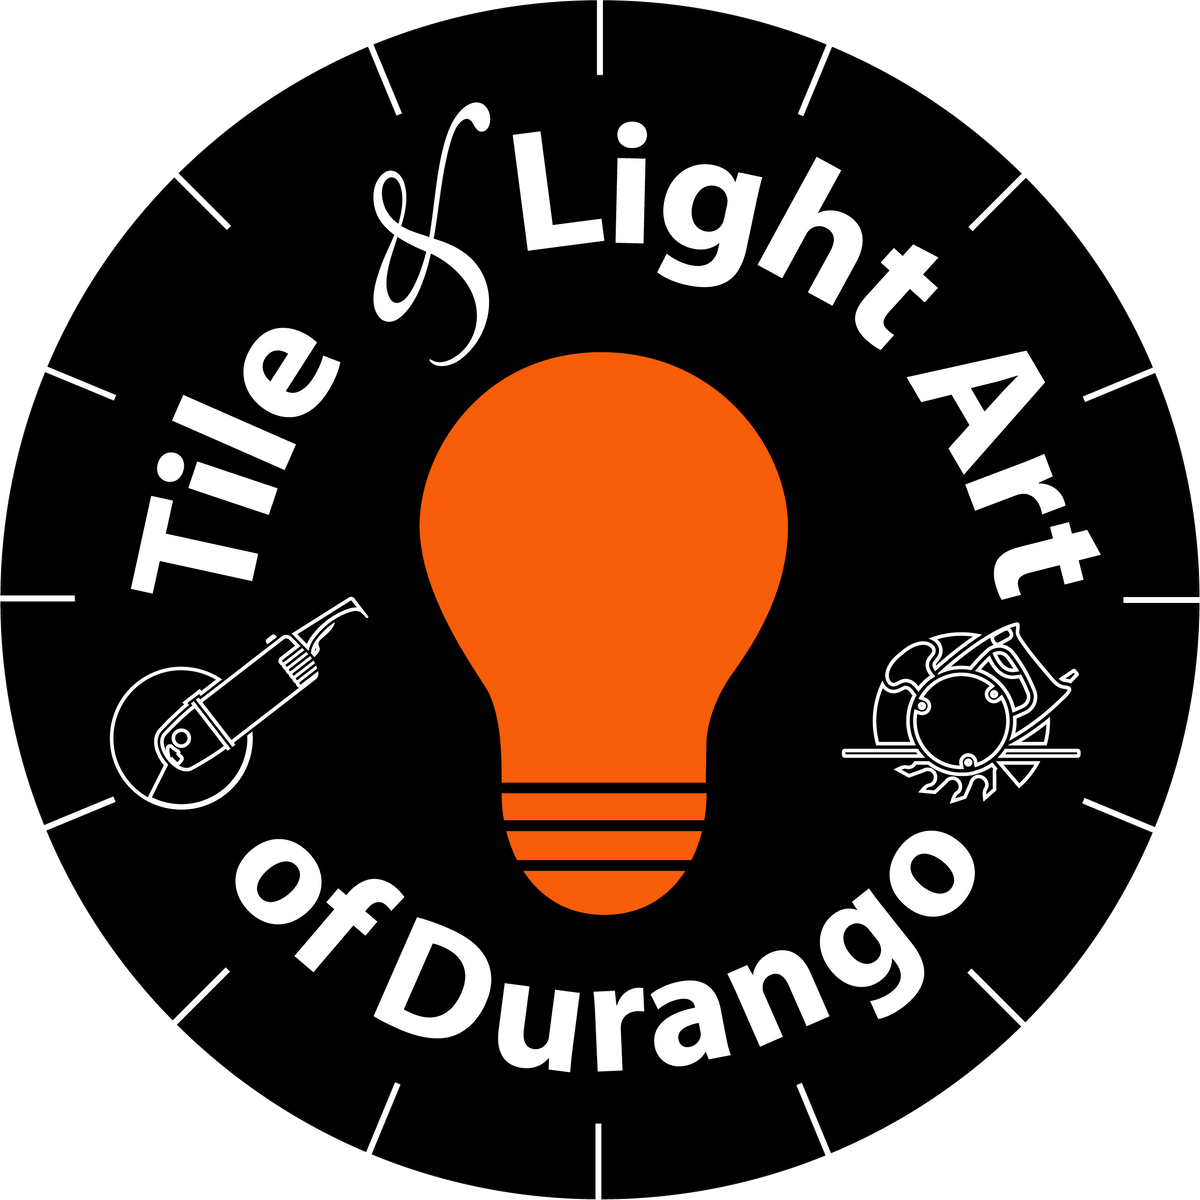 Tile & Light Art of Durango